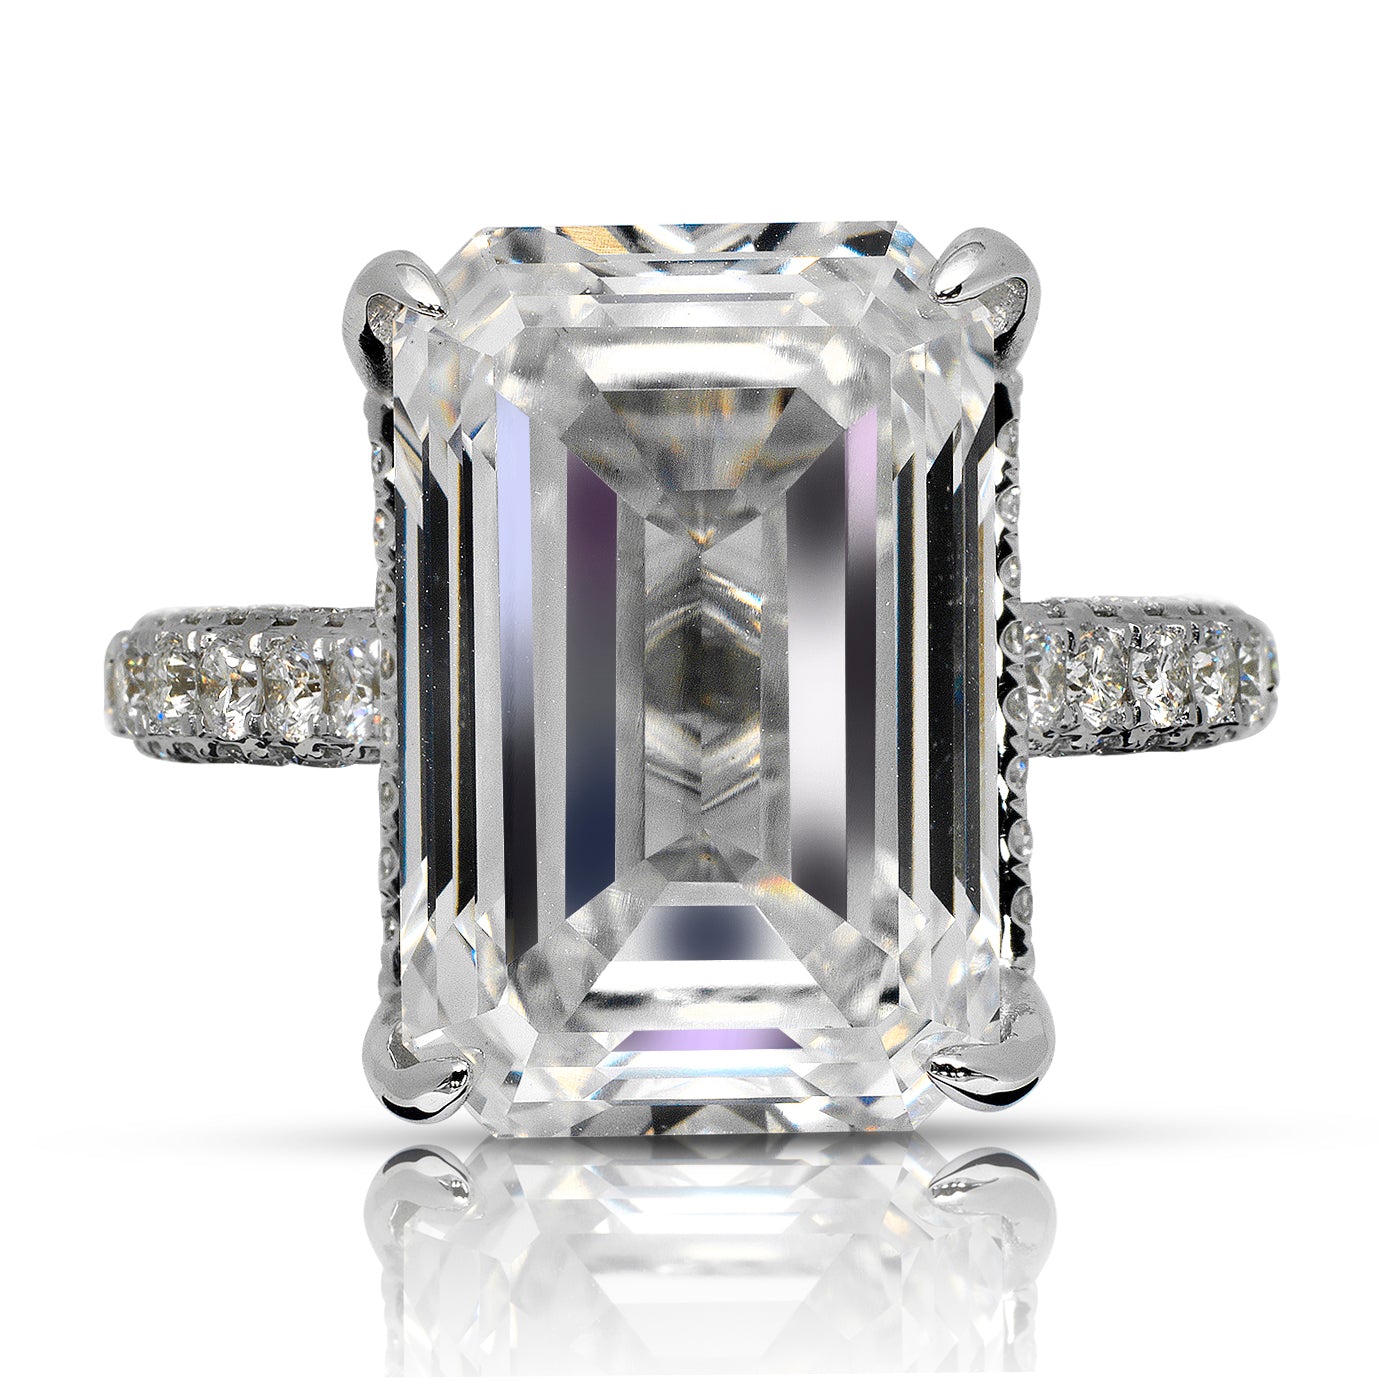 Alternative Rings for Grace Kelly's Engagement Ring by Nekta New York